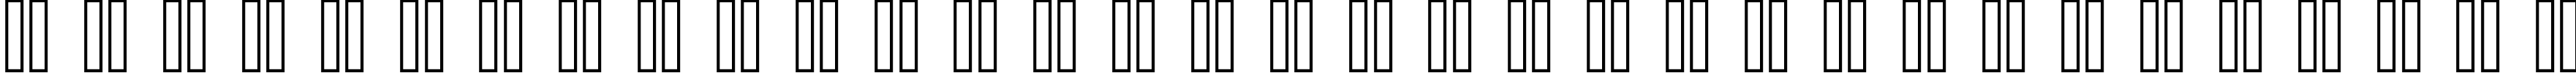 Пример написания русского алфавита шрифтом standard 09_66